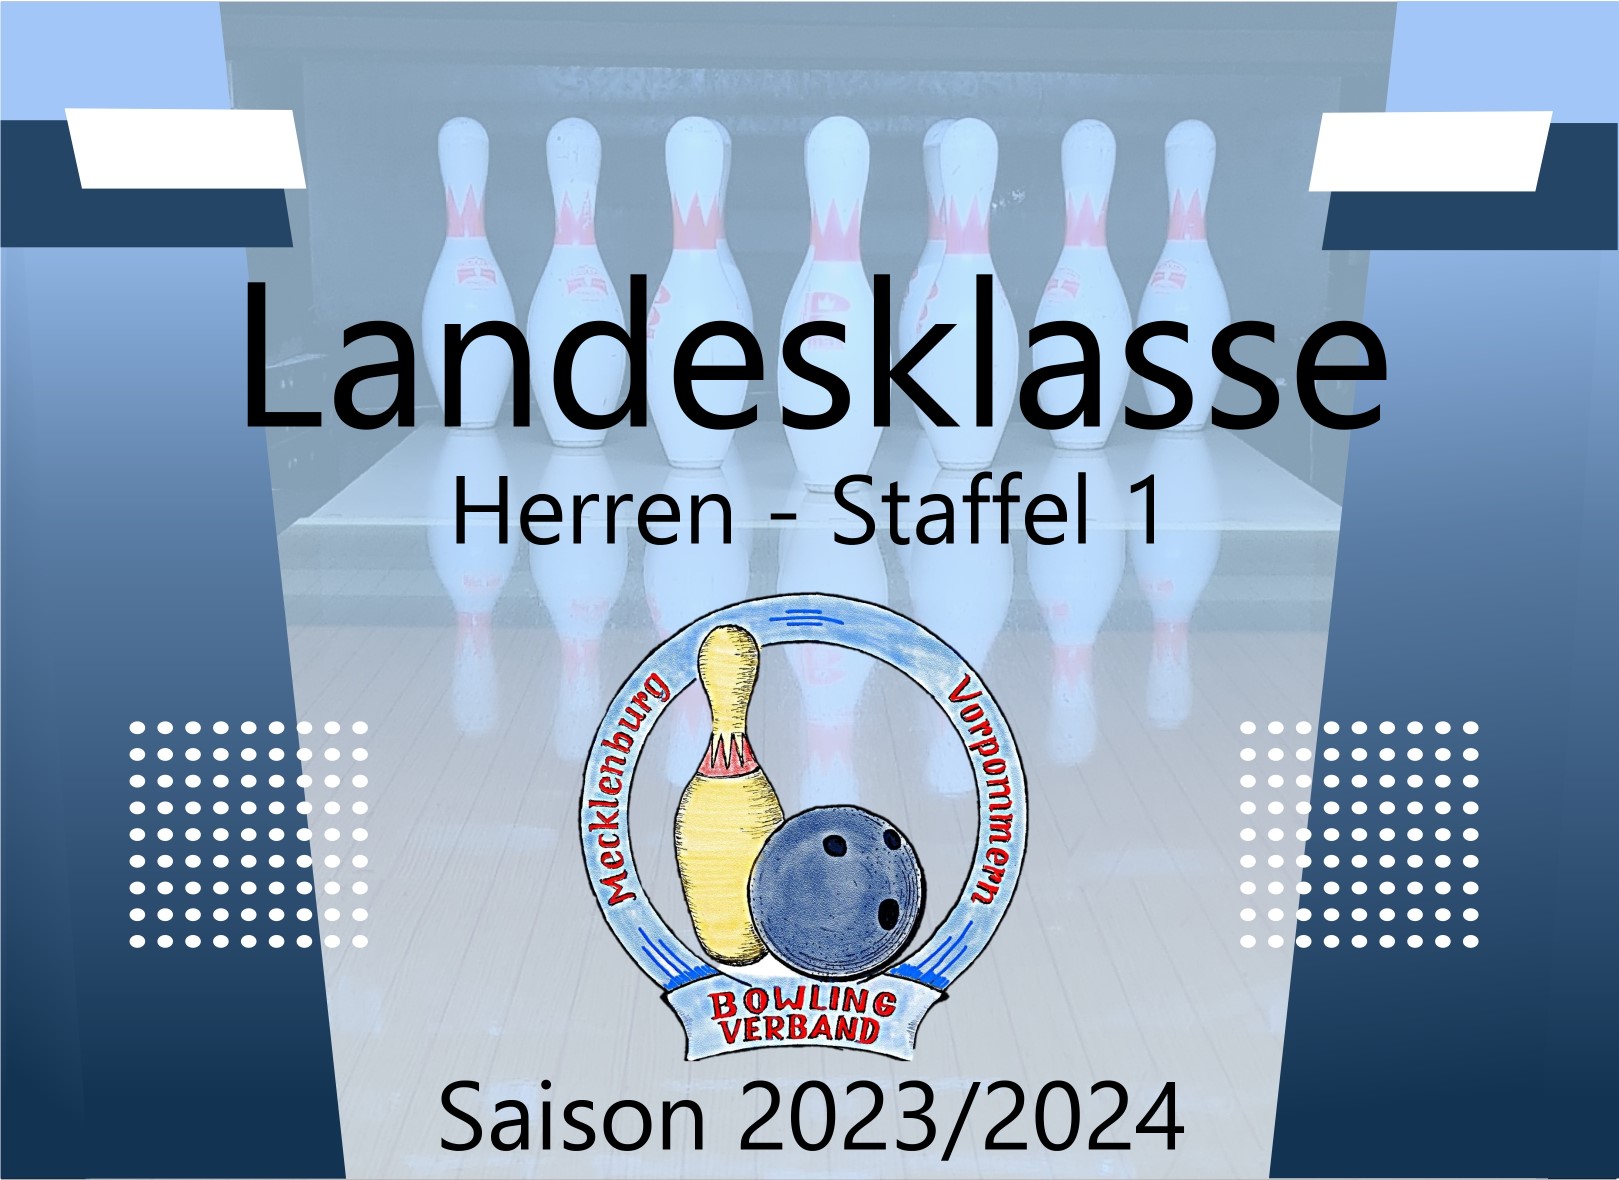 Landesklasse Herren Staffel 1 - 4. Spieltag